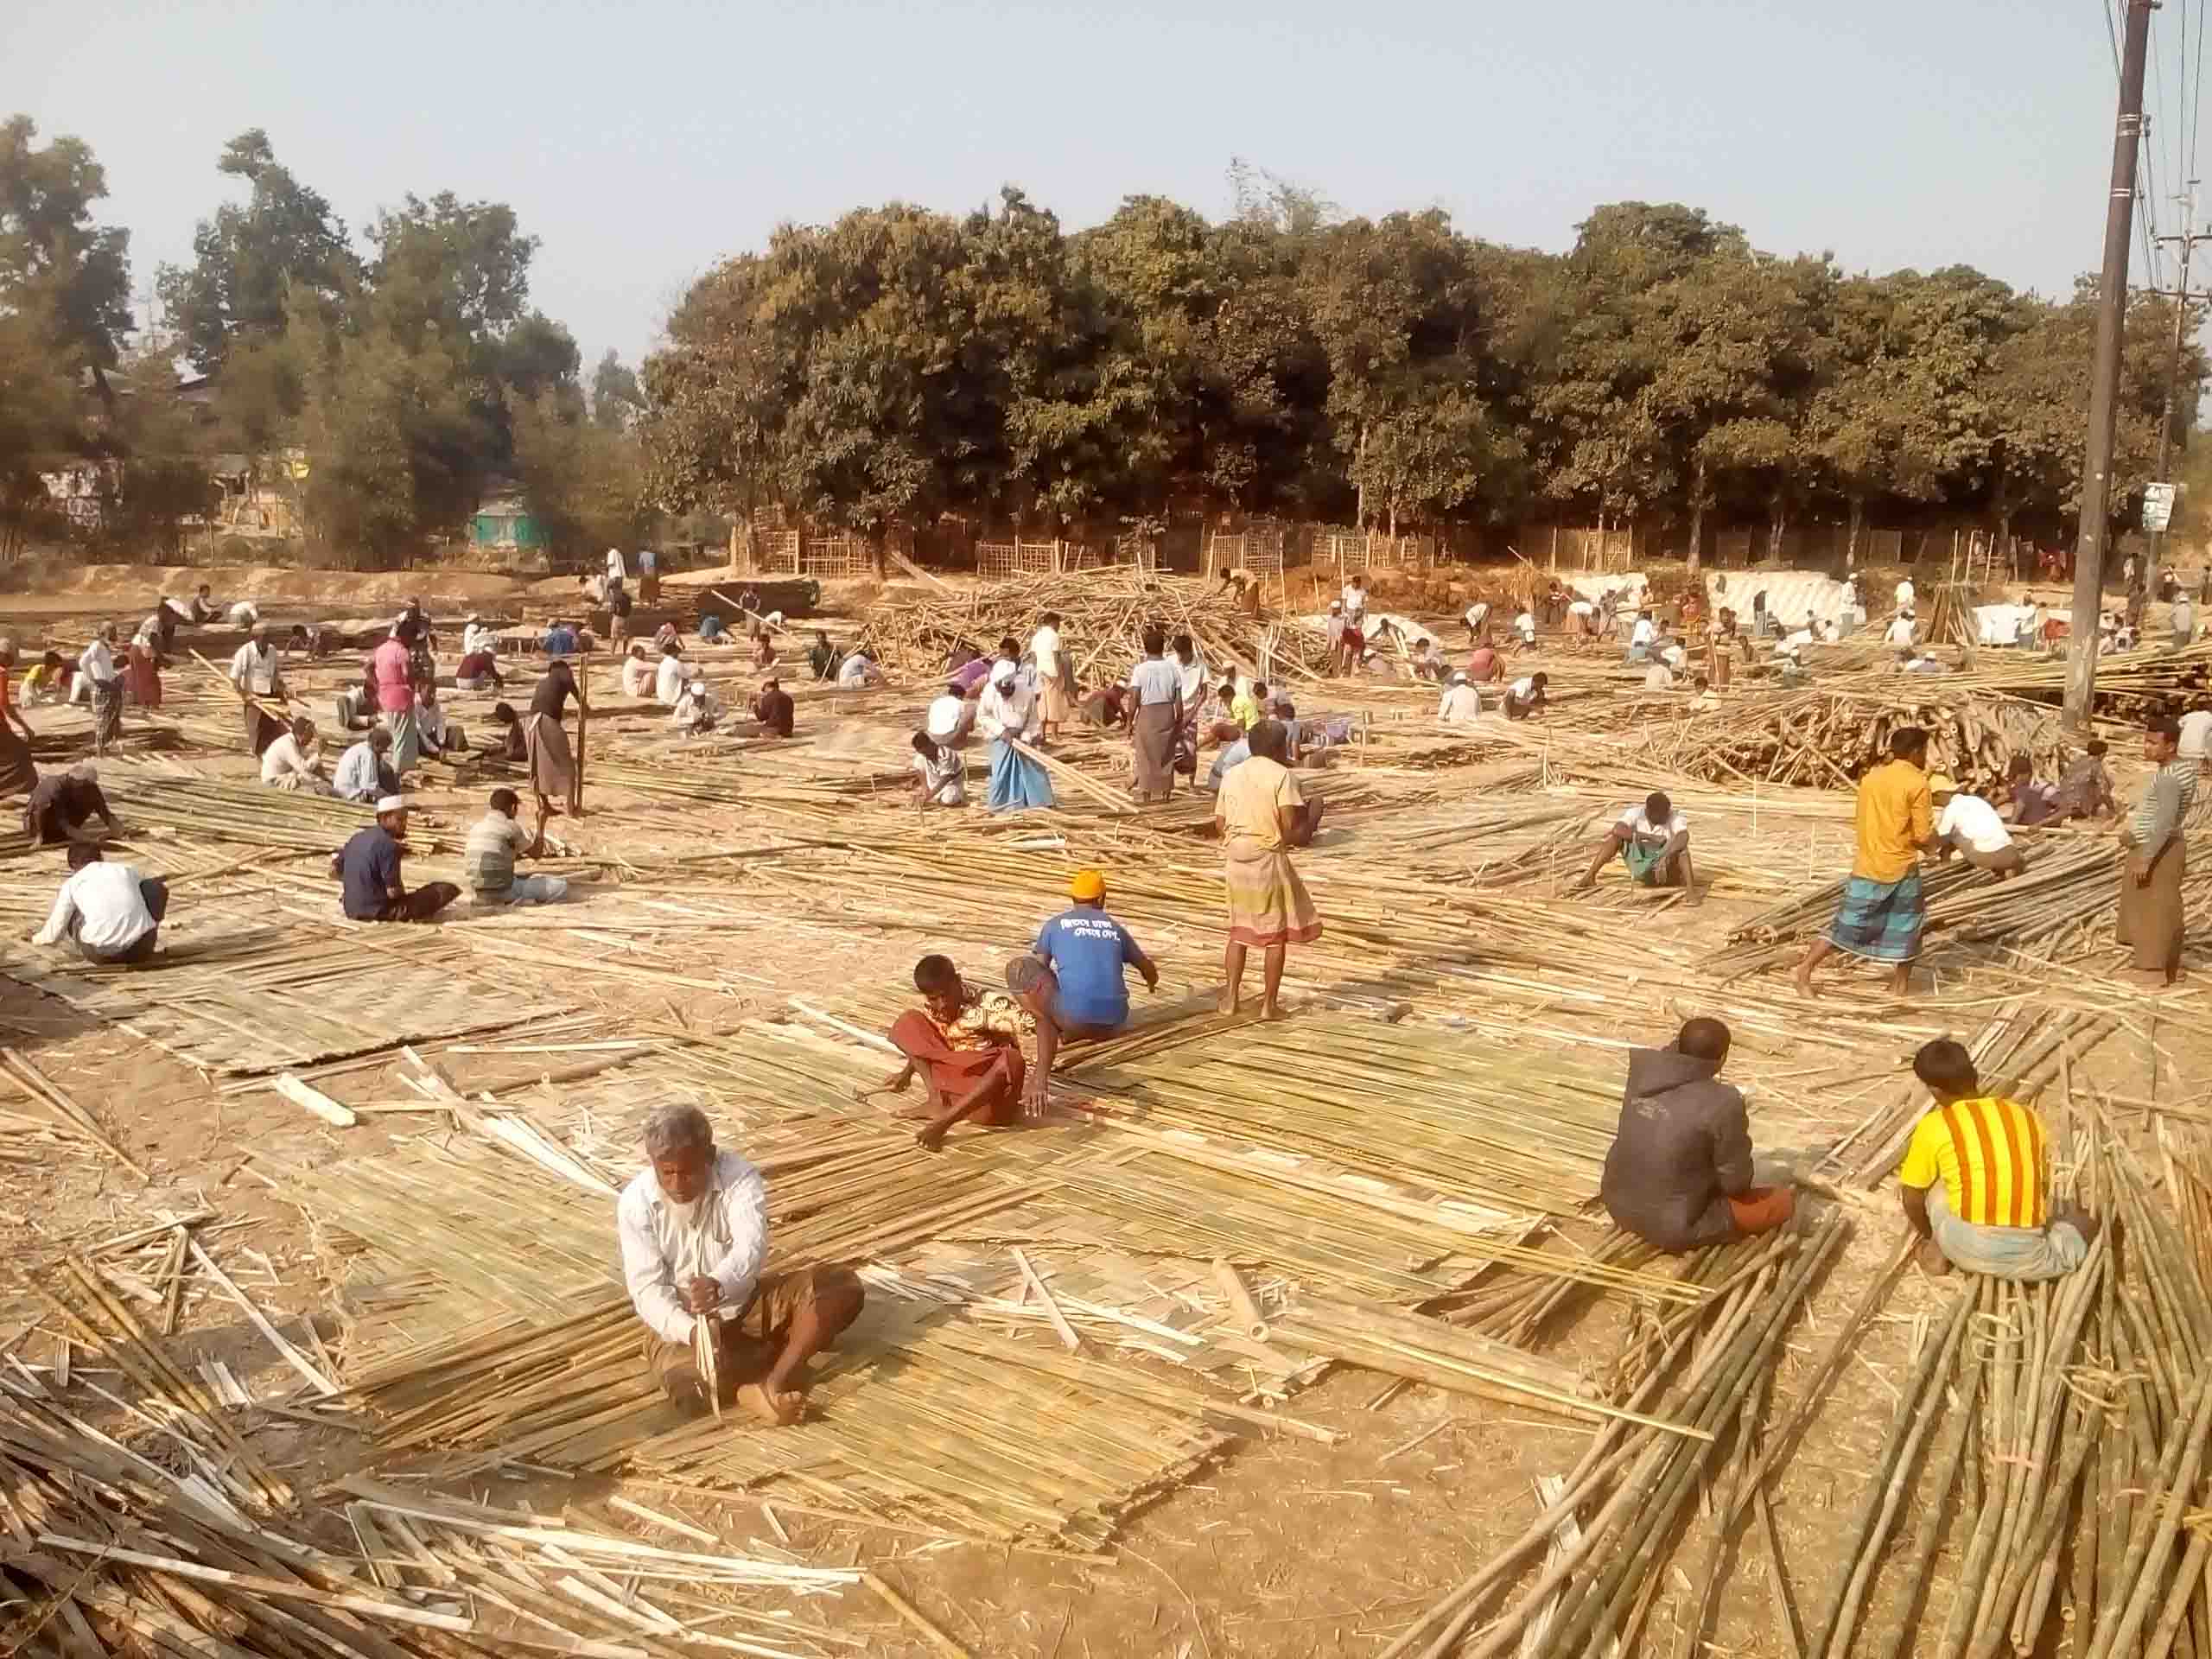 উখিয়ায় এনজিও সংস্থা তুর্কি’র শেড নির্মাণ কাজ করছে রোহিঙ্গা শ্রমিক